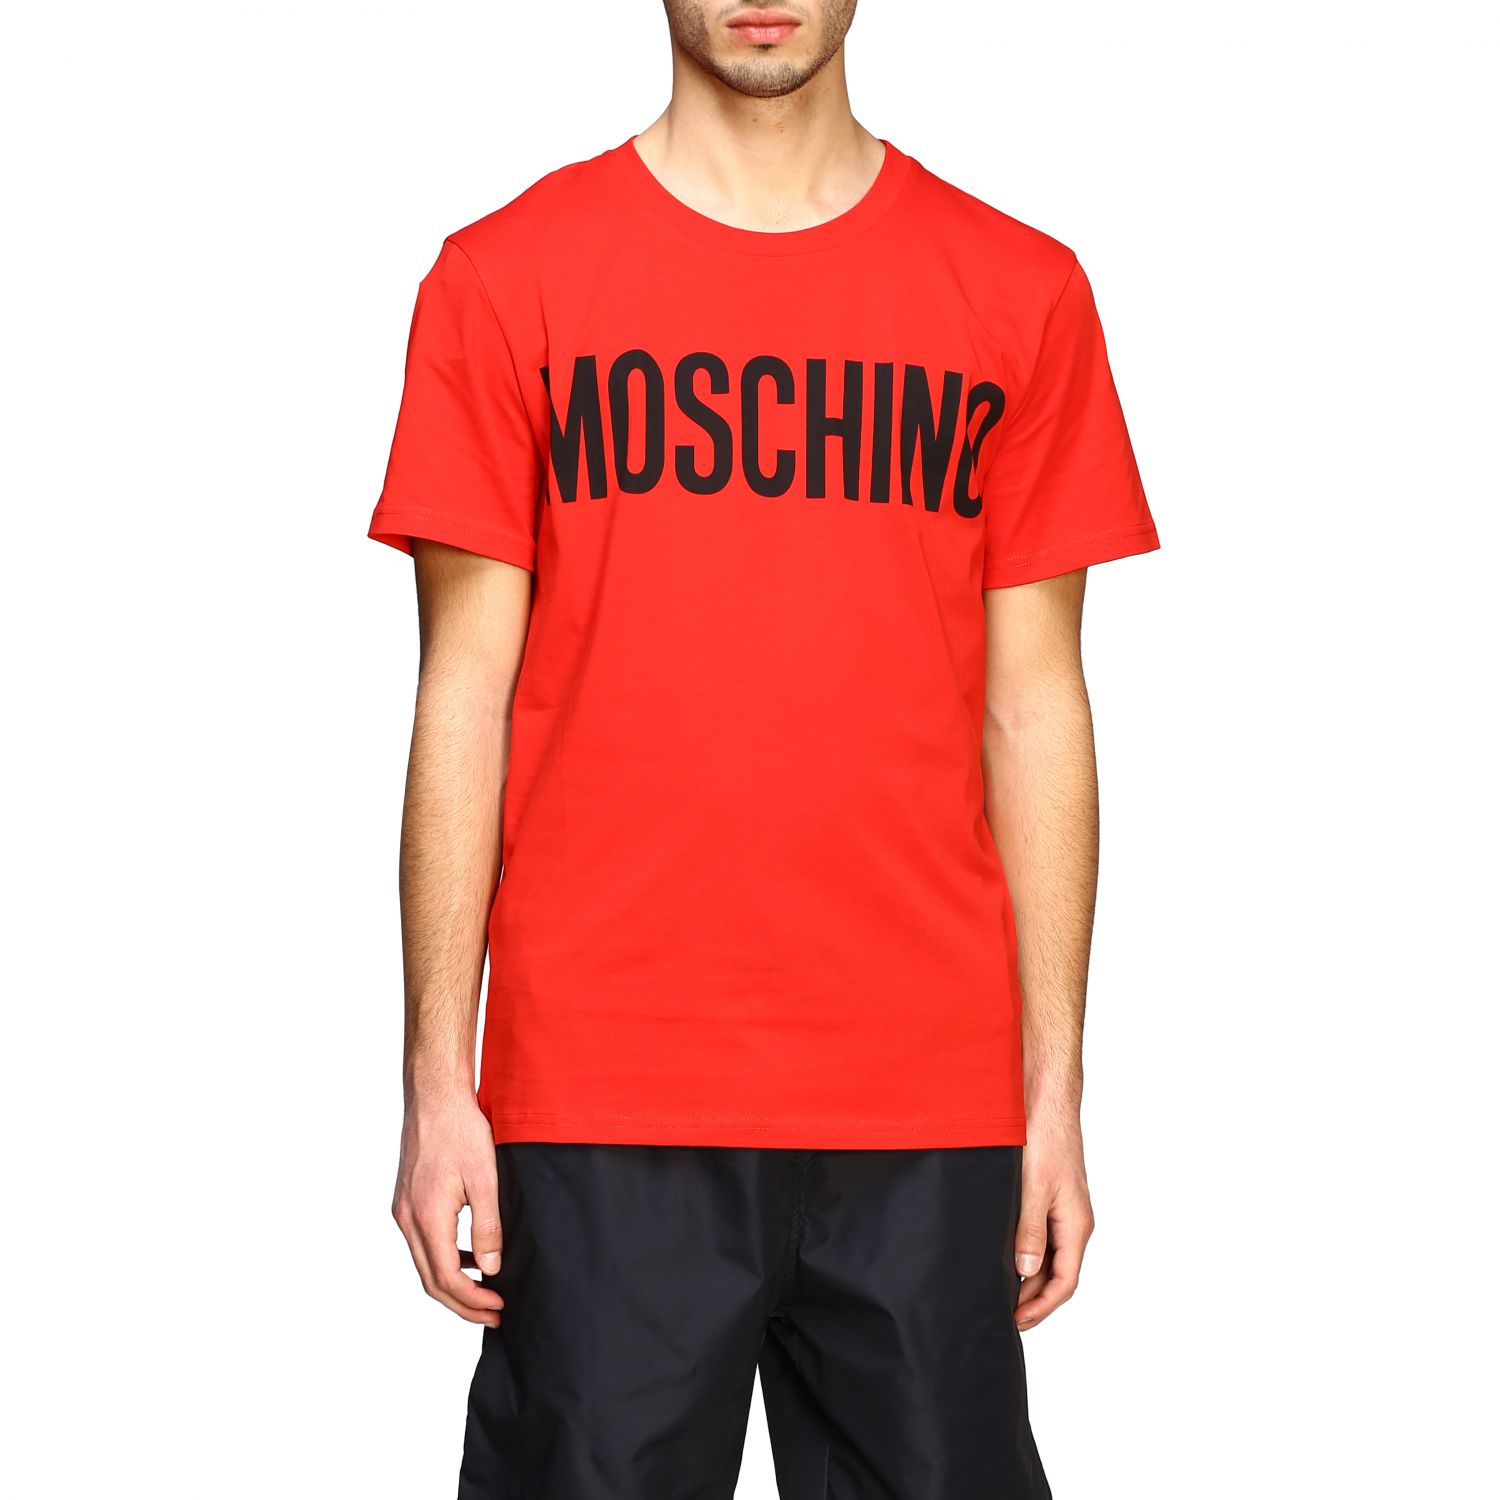 red moschino shirt